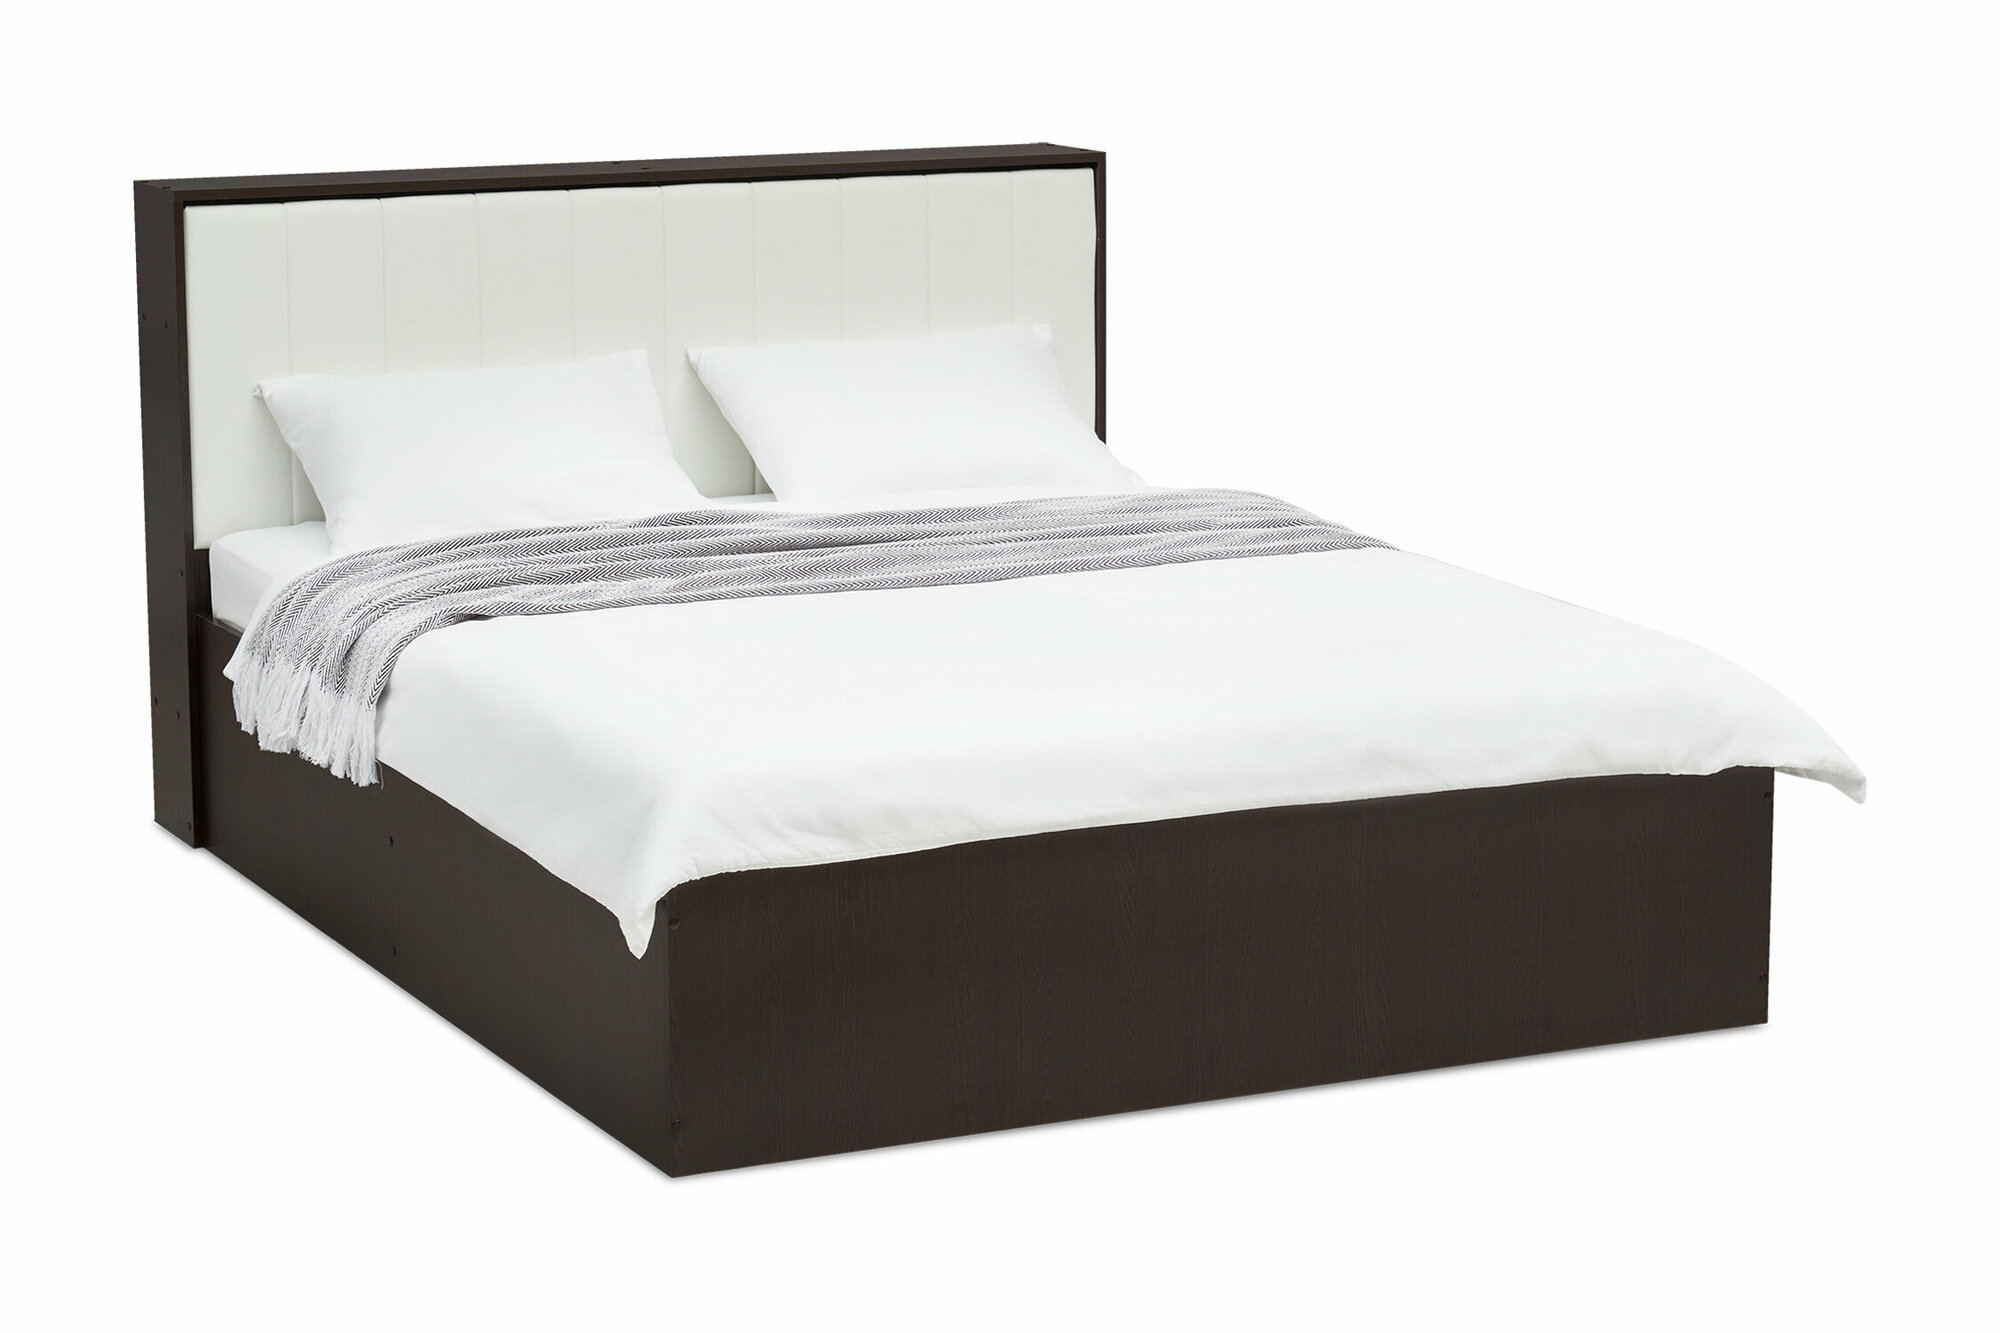 Кровать Нонтон Леда 2.0 1.6 м венге / белая 169x226x107 см